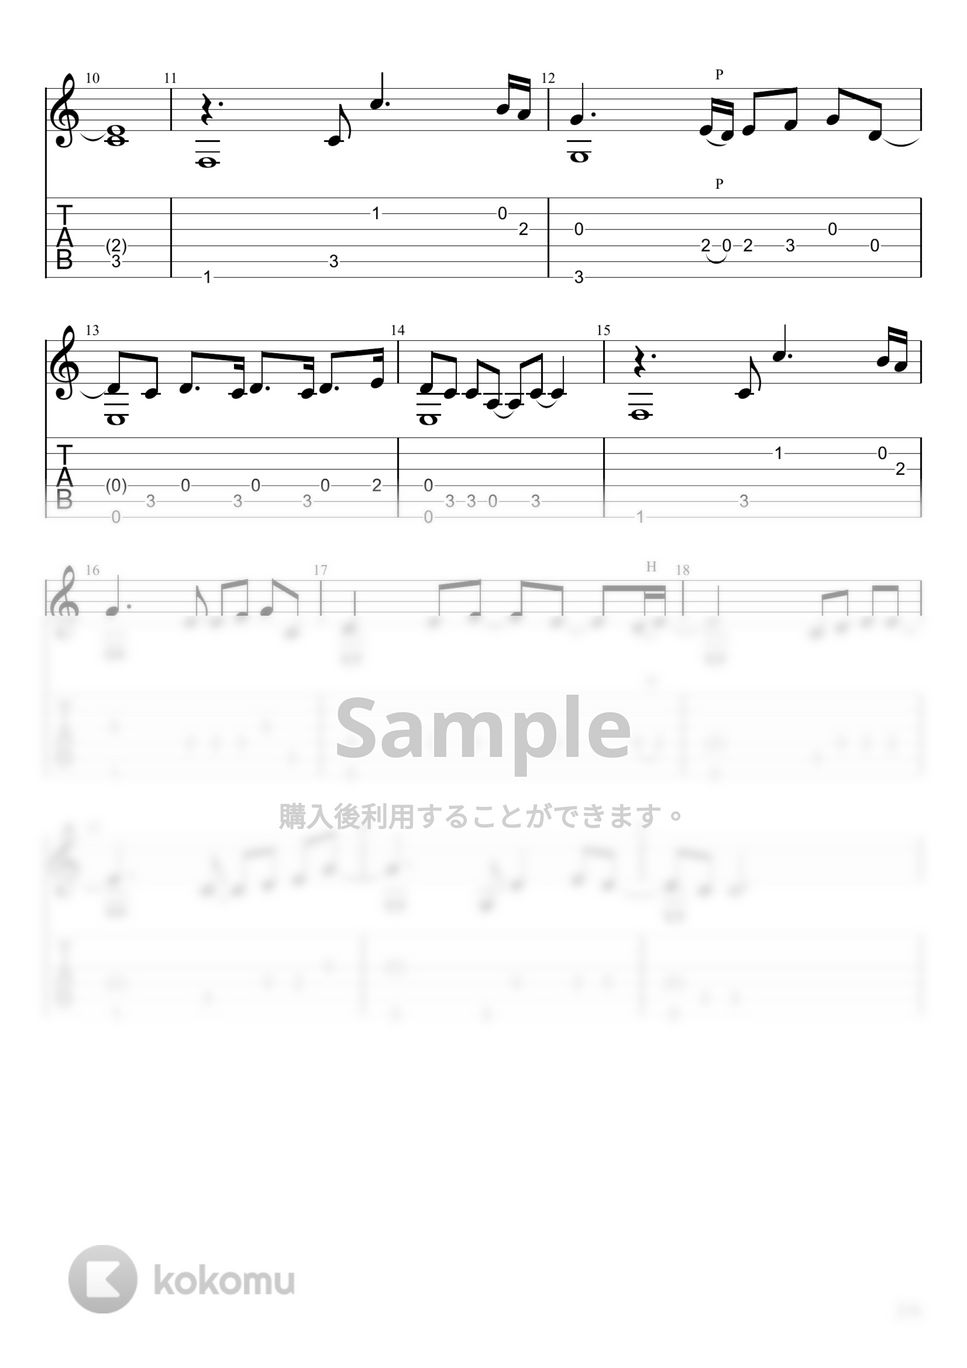 キタニタツヤ - 青のすみか (ソロギター) by u3danchou